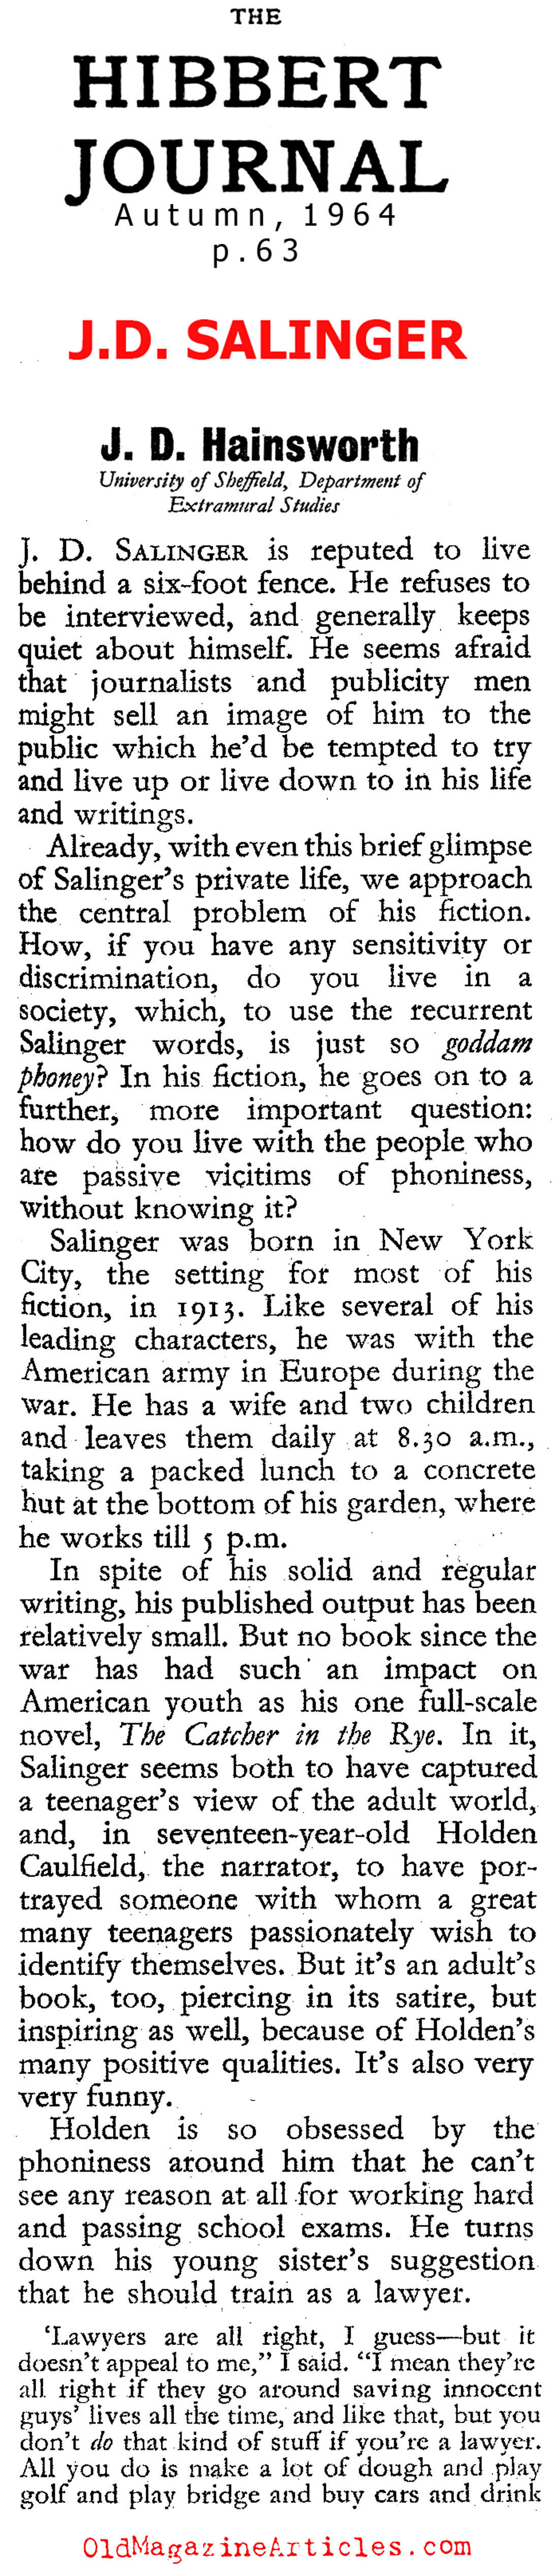 The Work of J.D. Salinger (The Hibbert Journal, 1964)